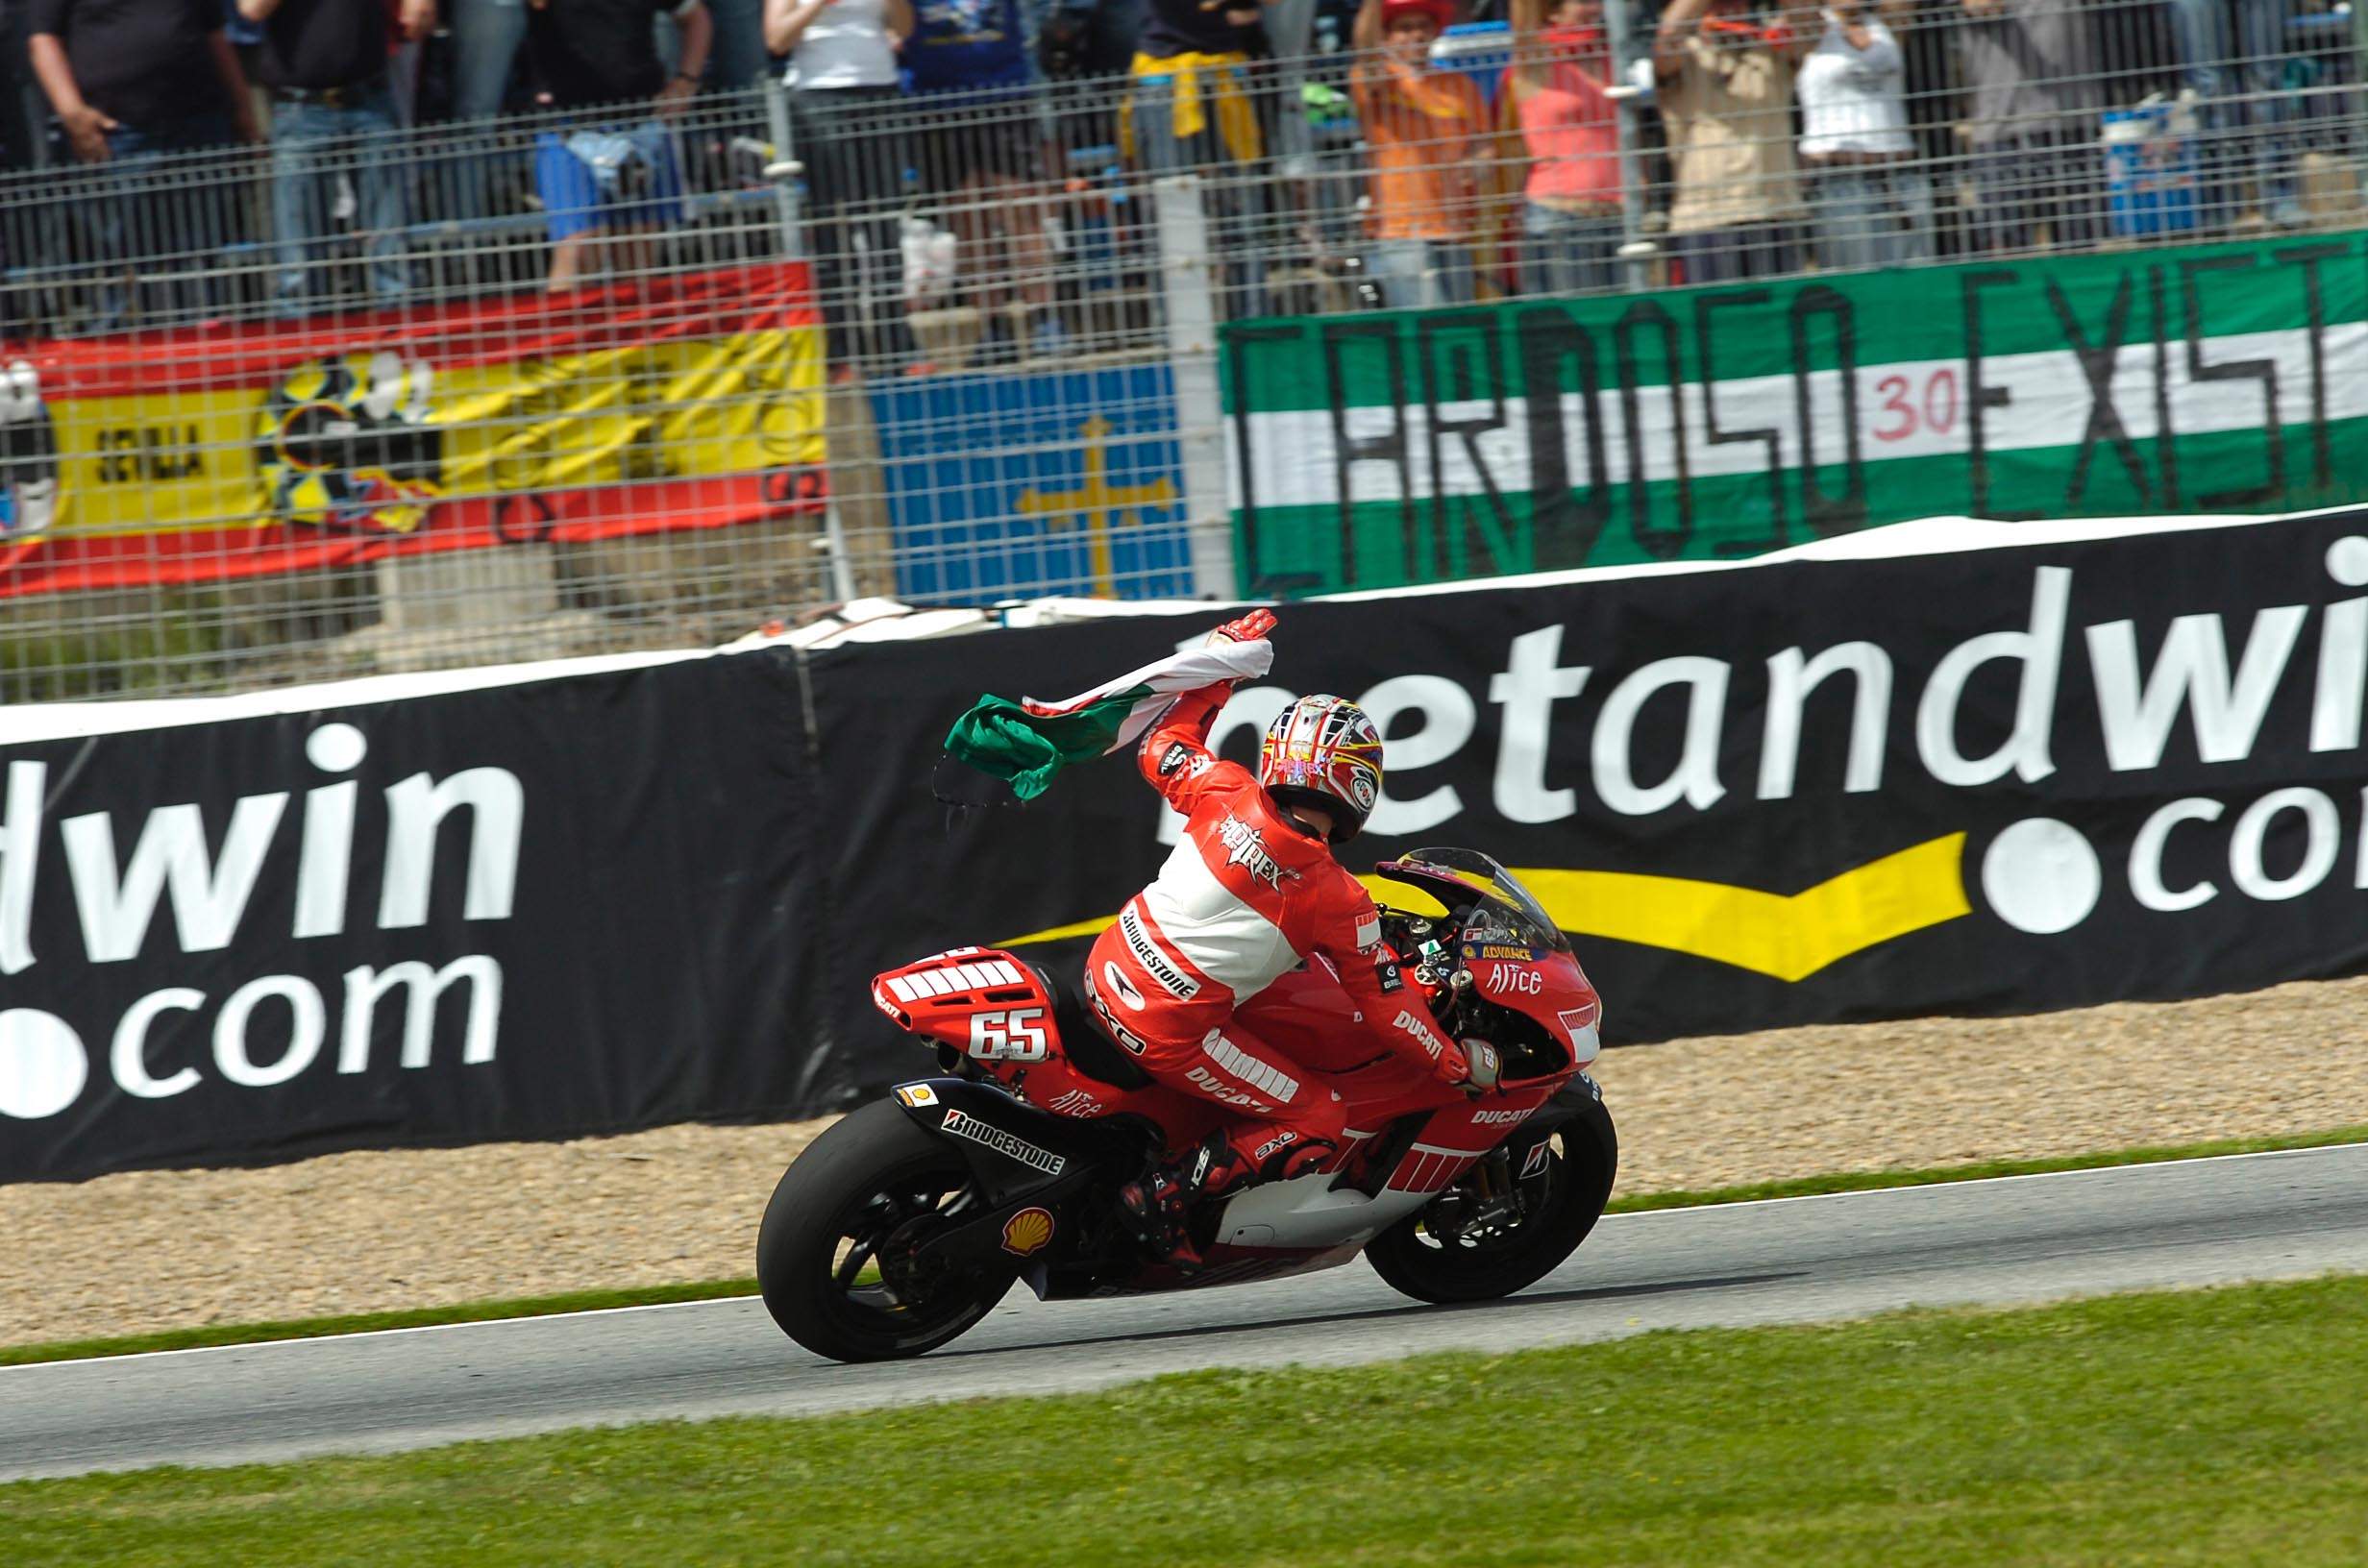 MotoGP: Pirmajame etape nugalėjo L.Capirossi